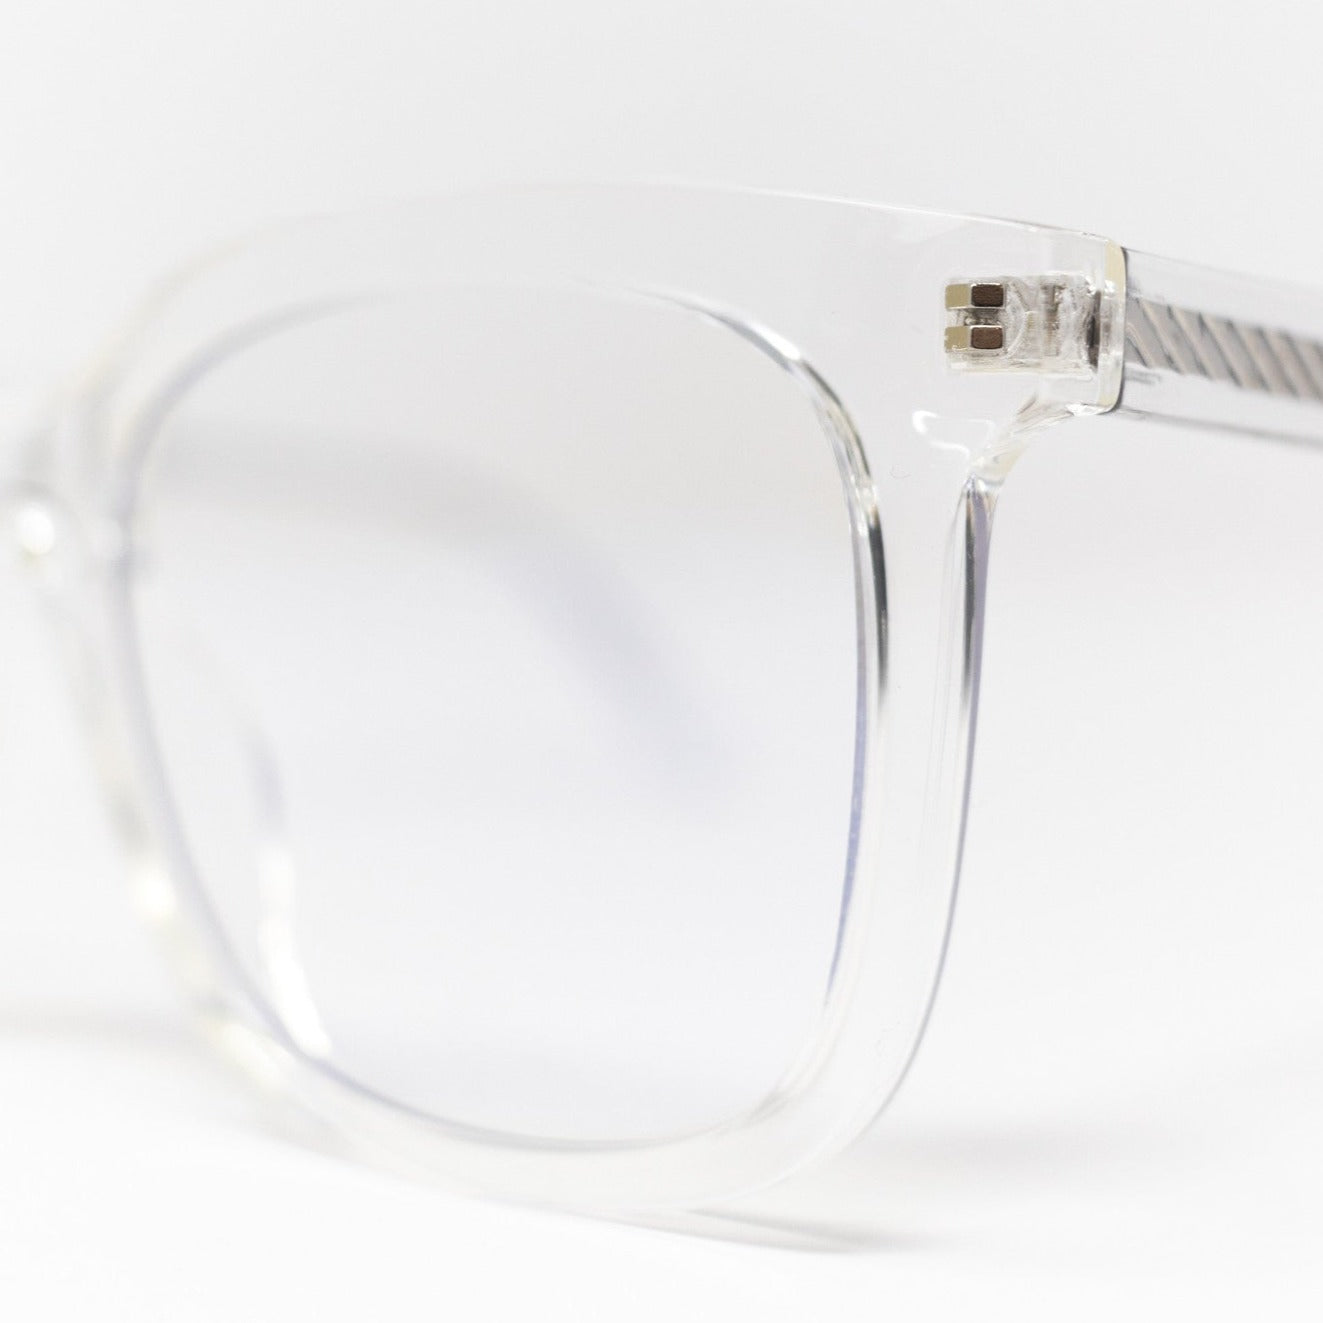 Houston Blue Light Glasses - Clear